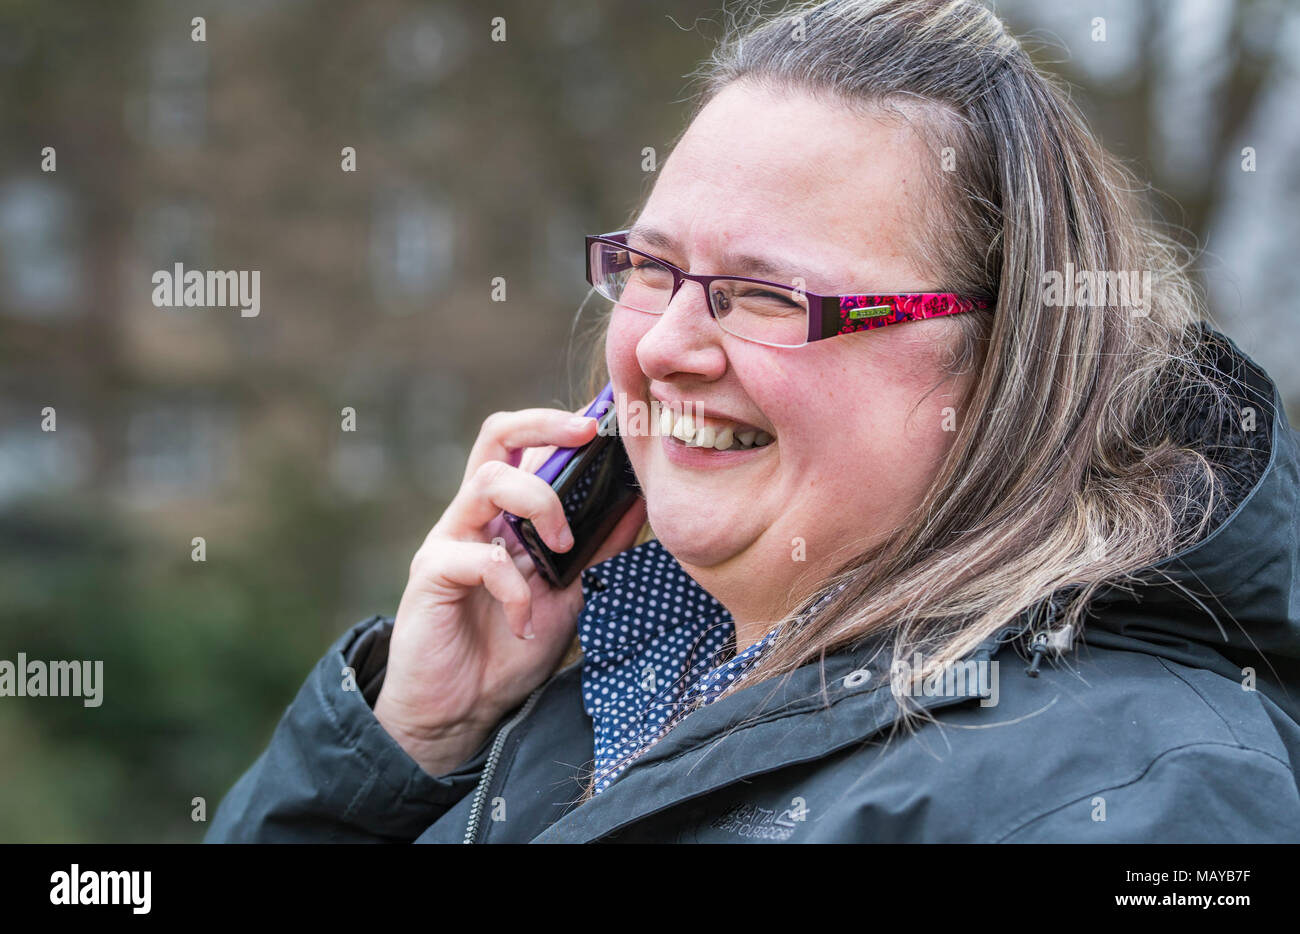 Young woman smiling et à heureux tout en parlant sur un téléphone mobile. Concept de bonheur. Agréable nouvelle. Une bonne nouvelle. Banque D'Images